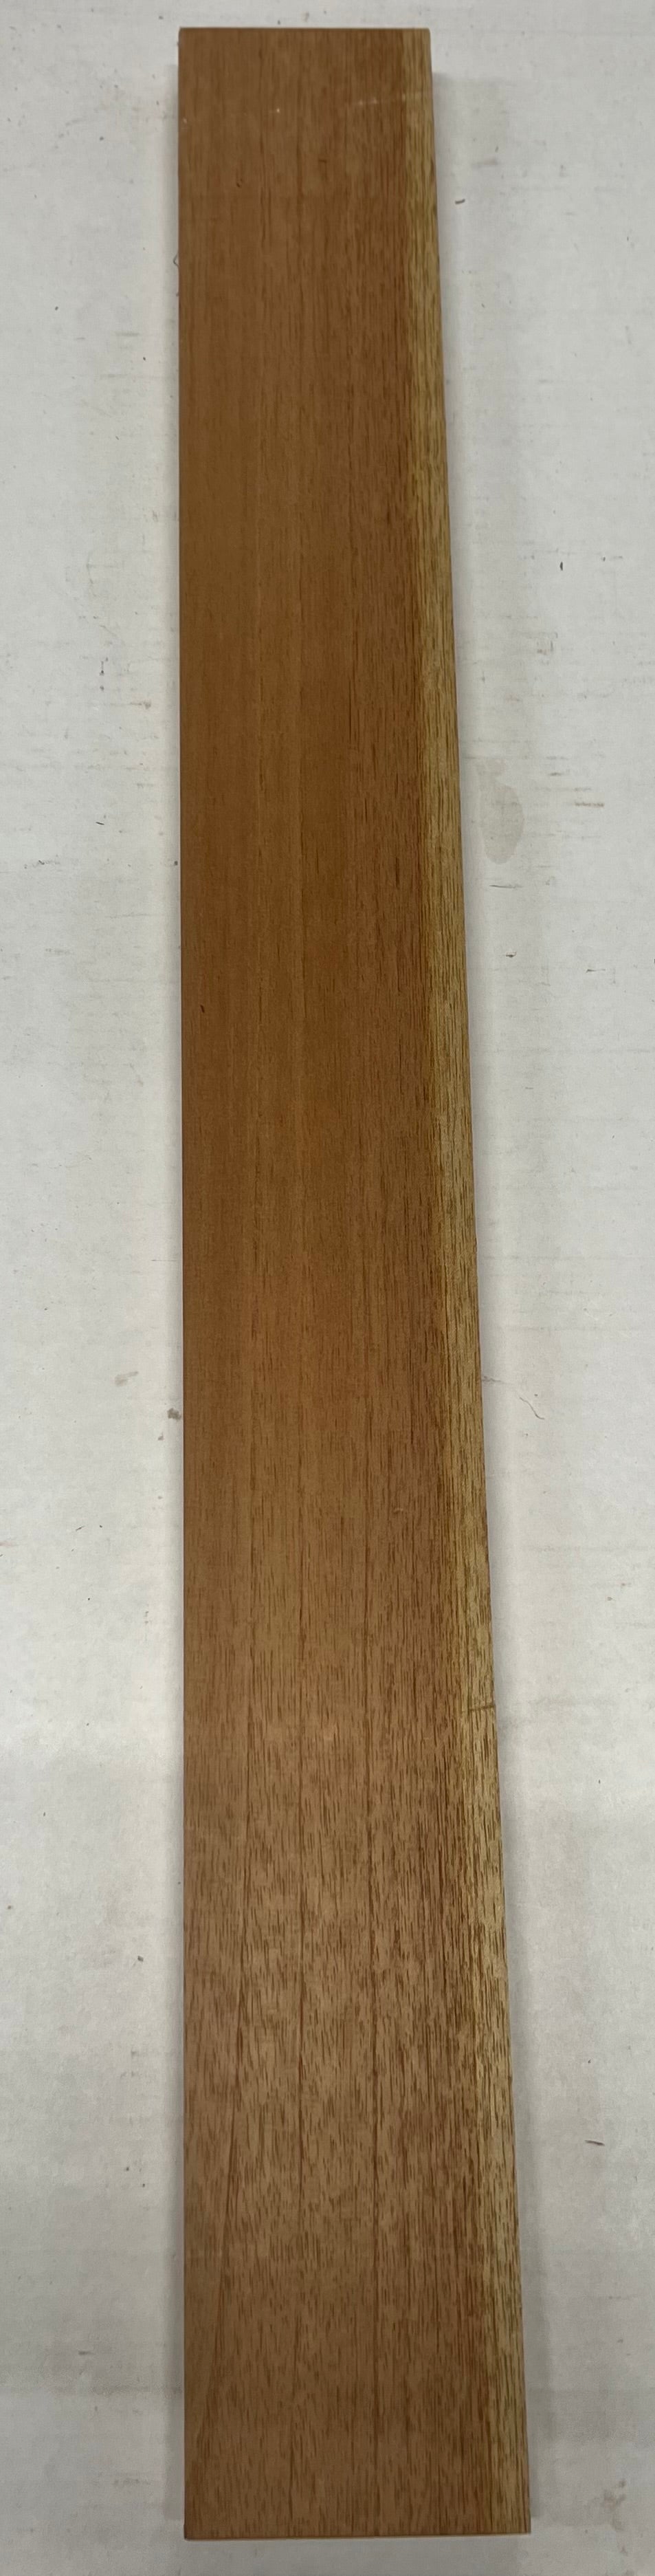 Cedar Dimensional Lumber at